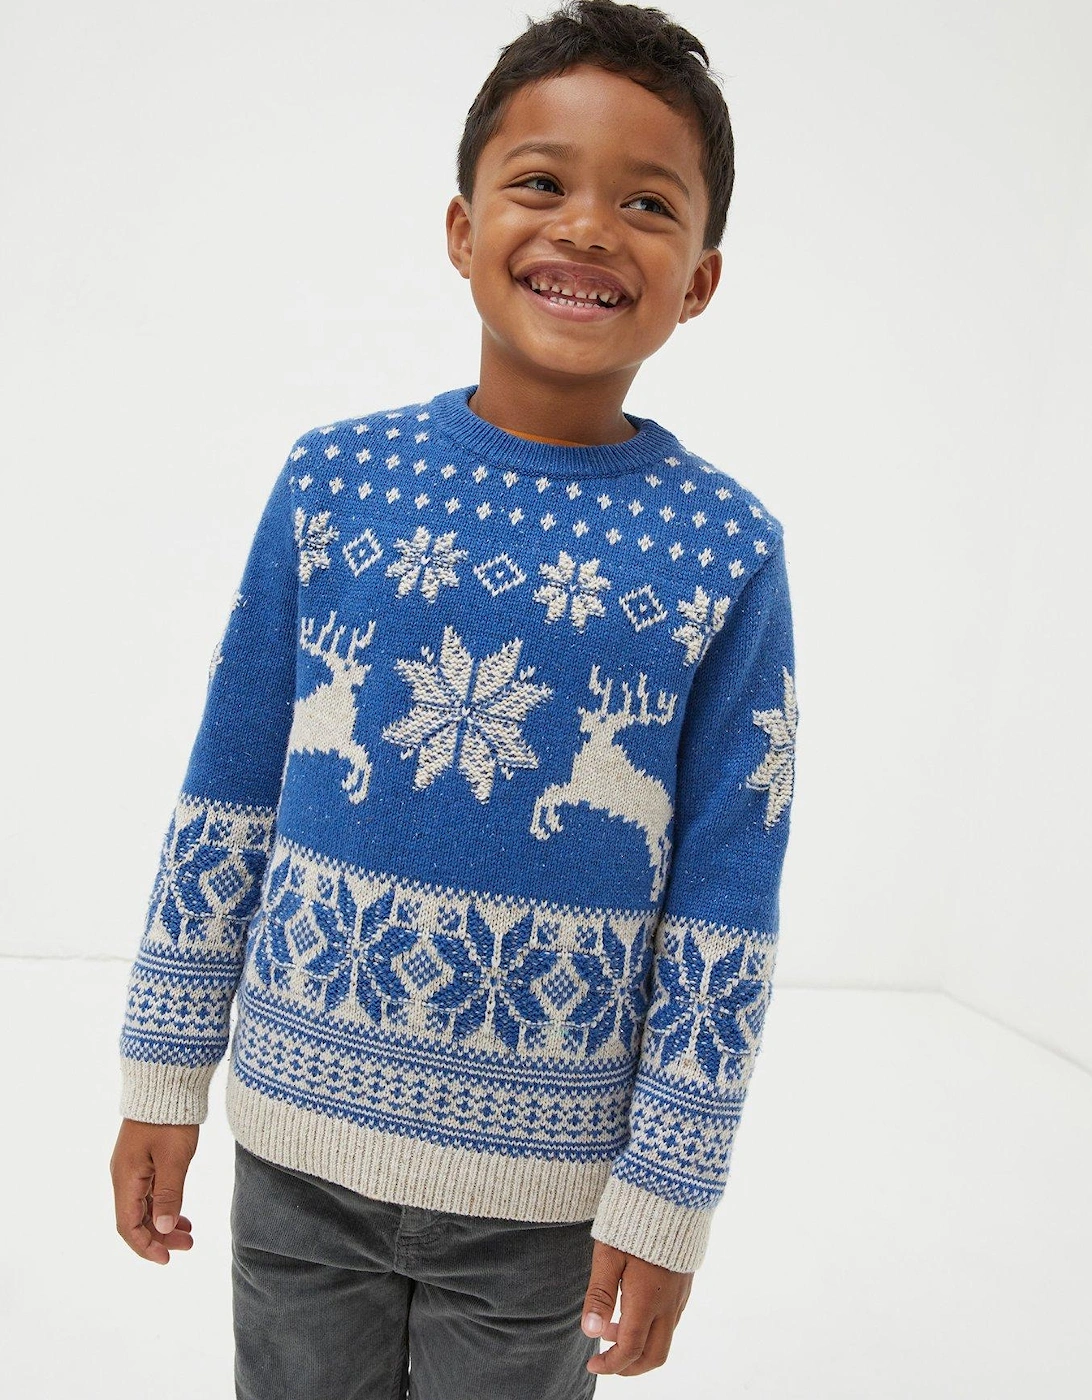 Boys Family Deer Christmas Knitted Jumper - Blue